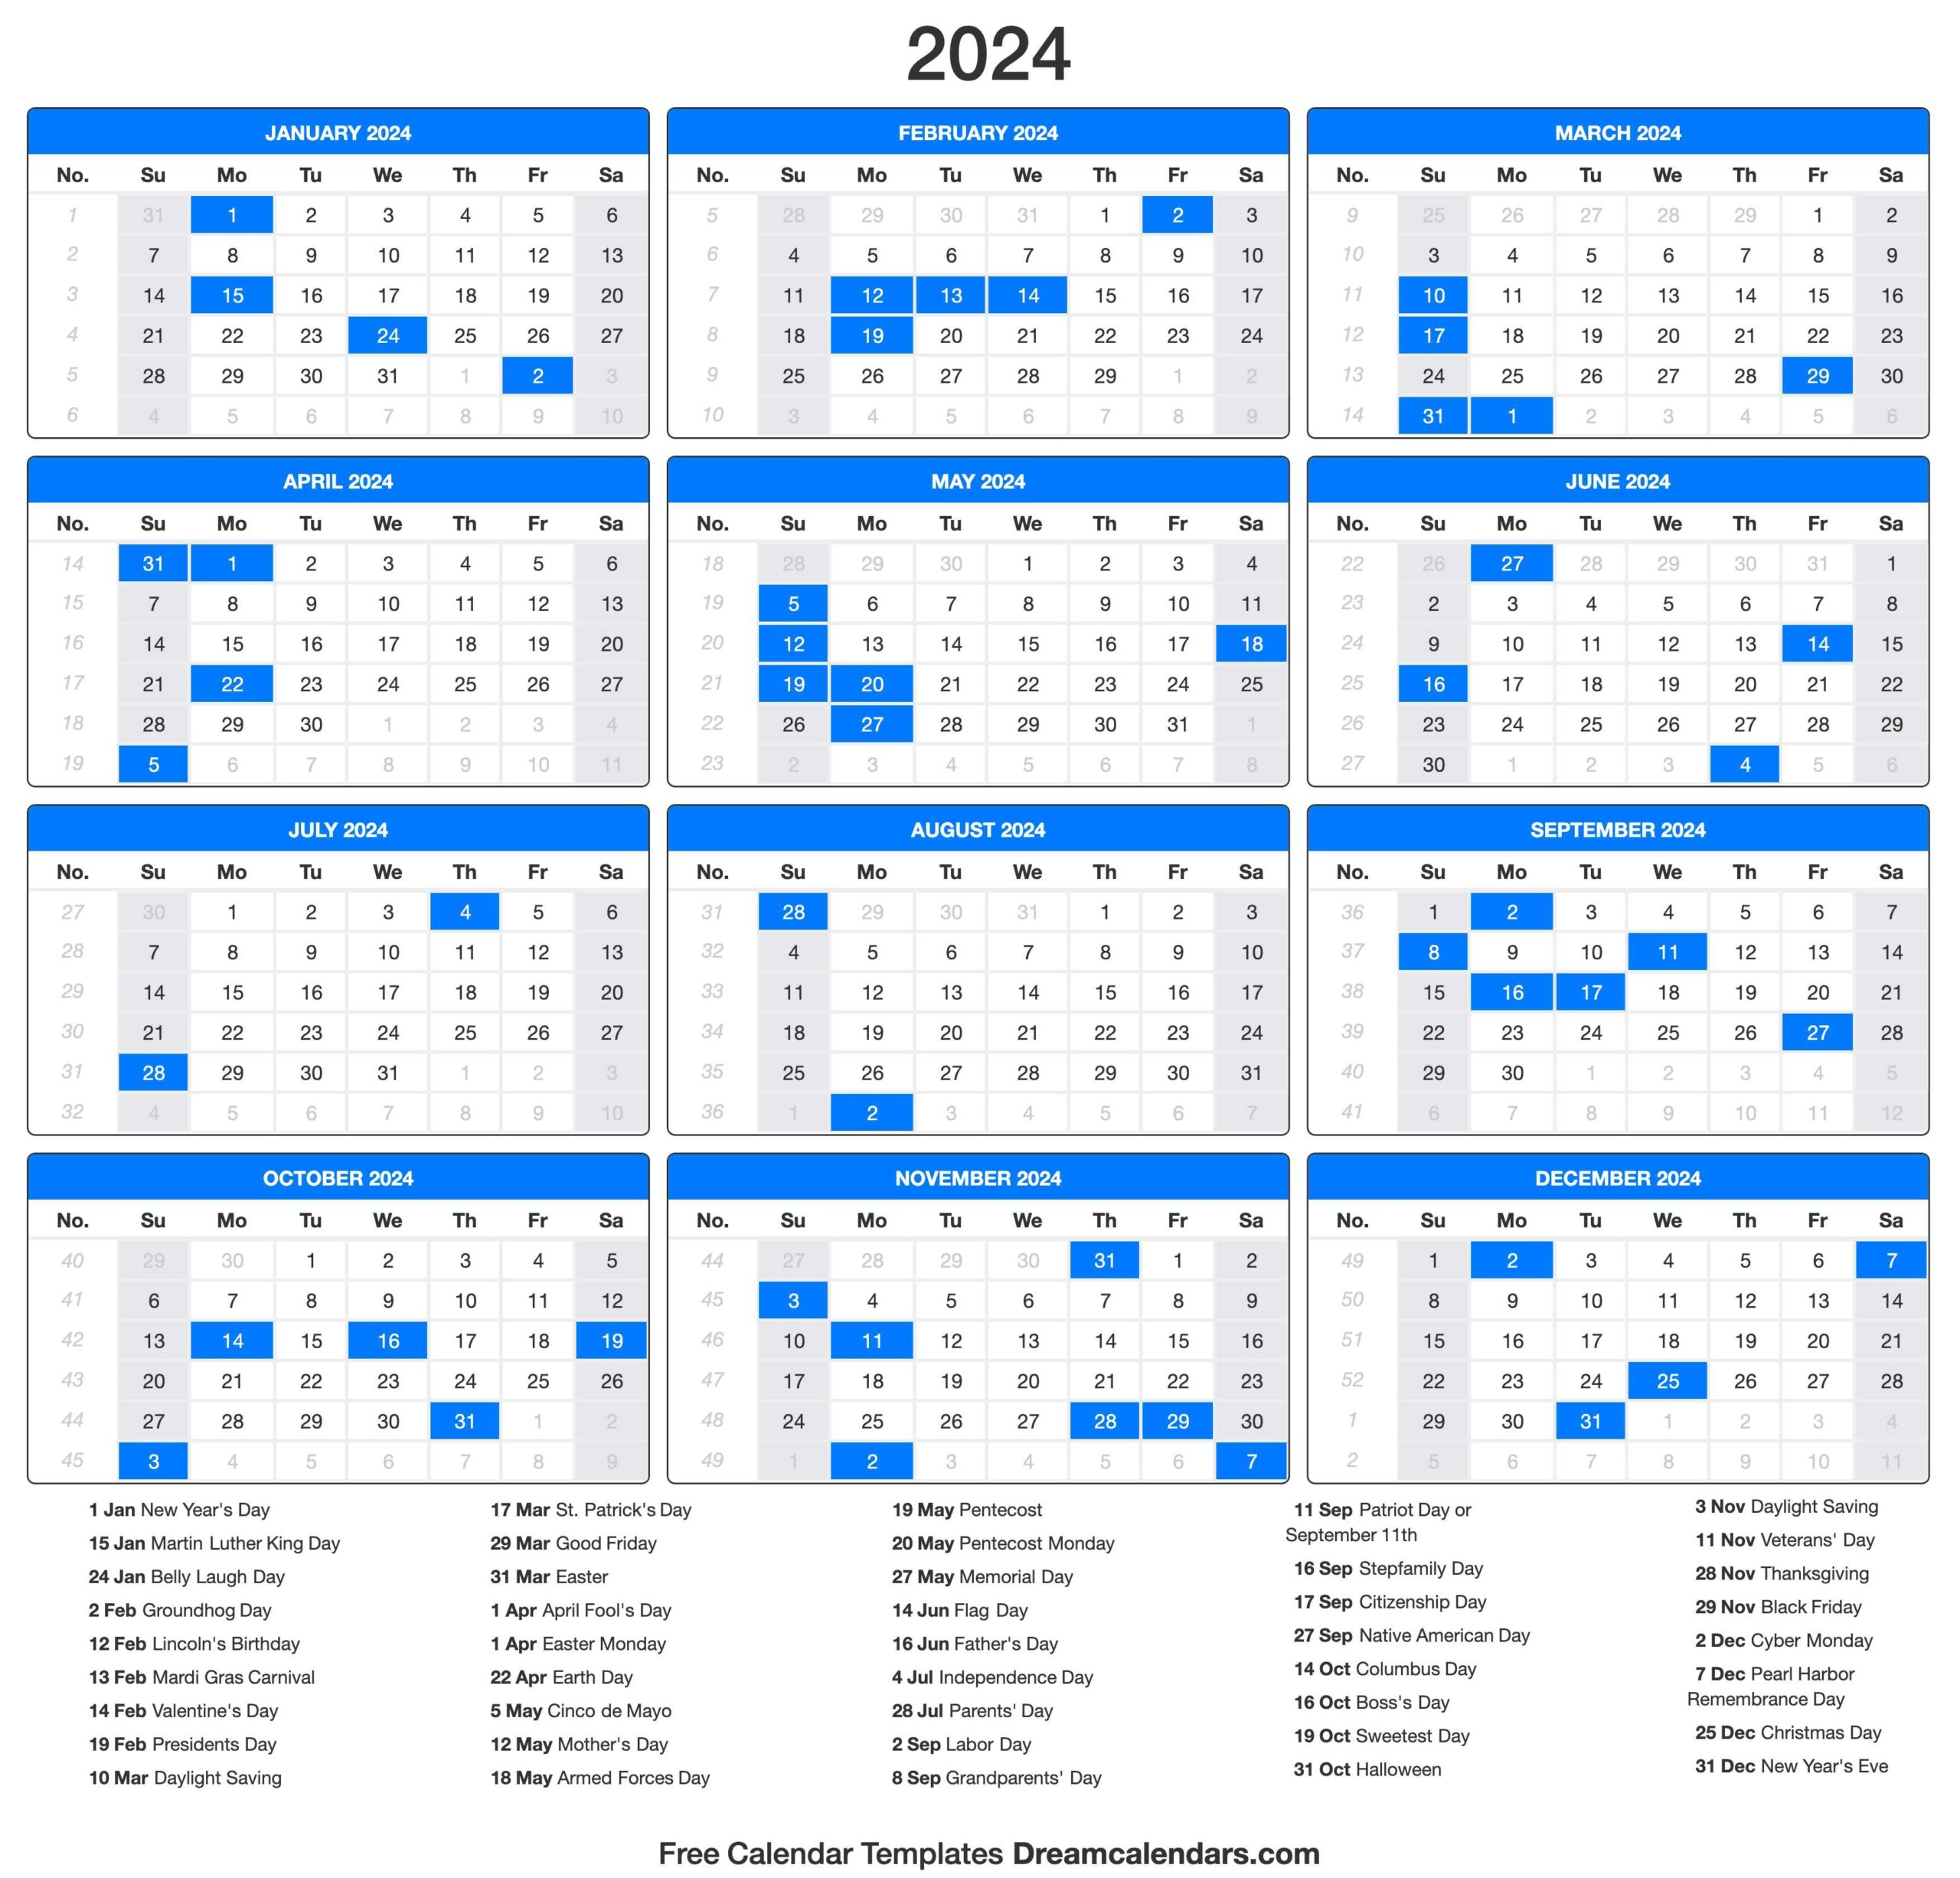 2024 Calendar - Free Printable 2024 November Calendar Templates